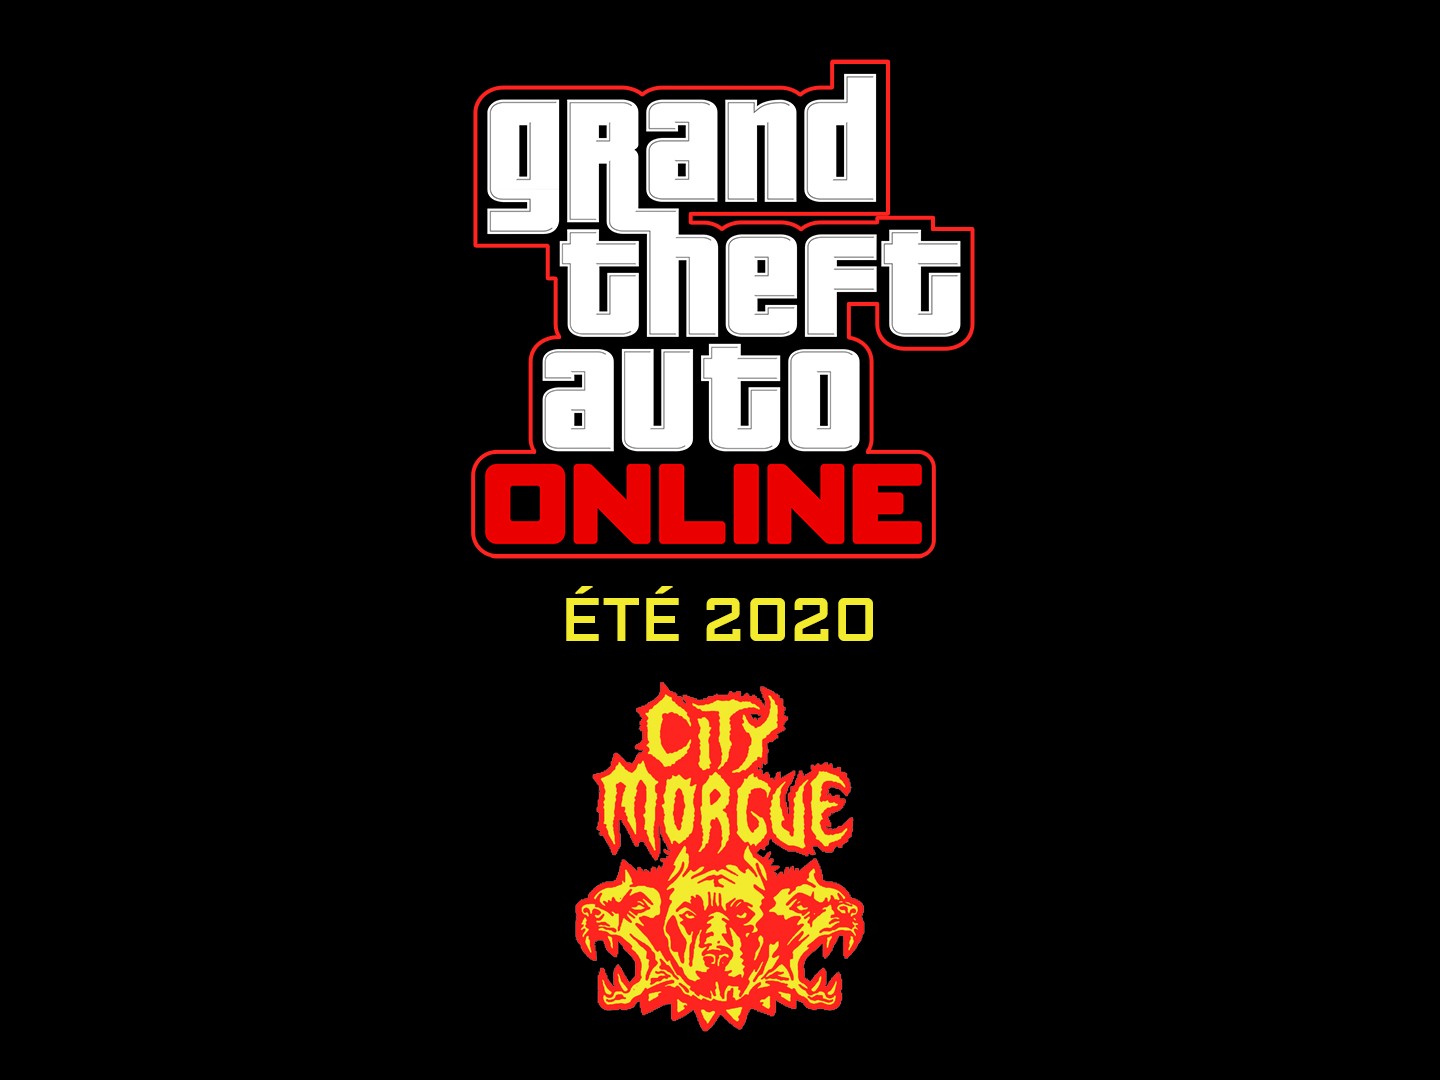 GTA Online : Grosse Mise à Jour Ete 2020 City Morgue Nouvelle Radio